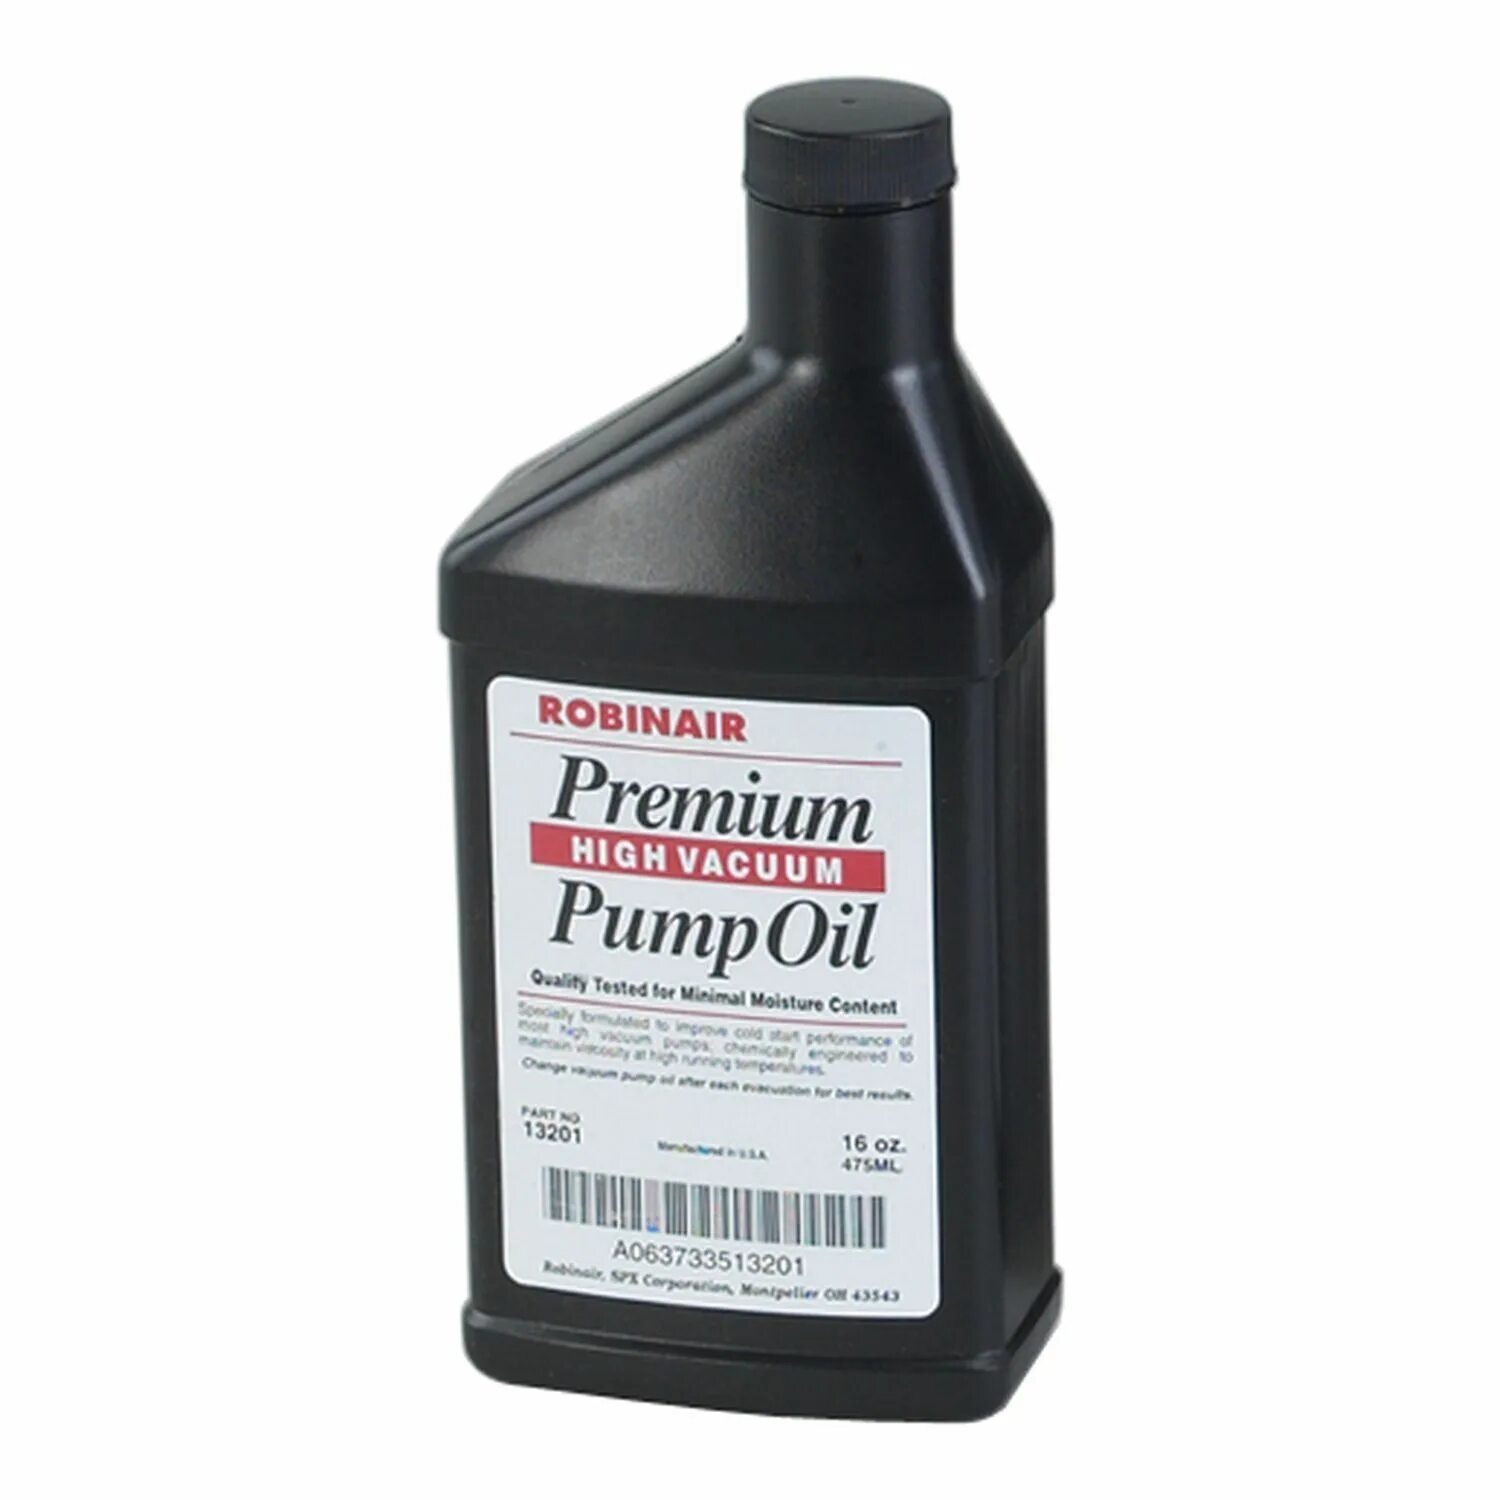 Масло Premium Vacuum Pump Oil. Вакуумный насос Robinair. High Vacuum Pump Oil масло для вакуумного насоса. Robinair 15301 вакуумный насос. Сколько масла в насос